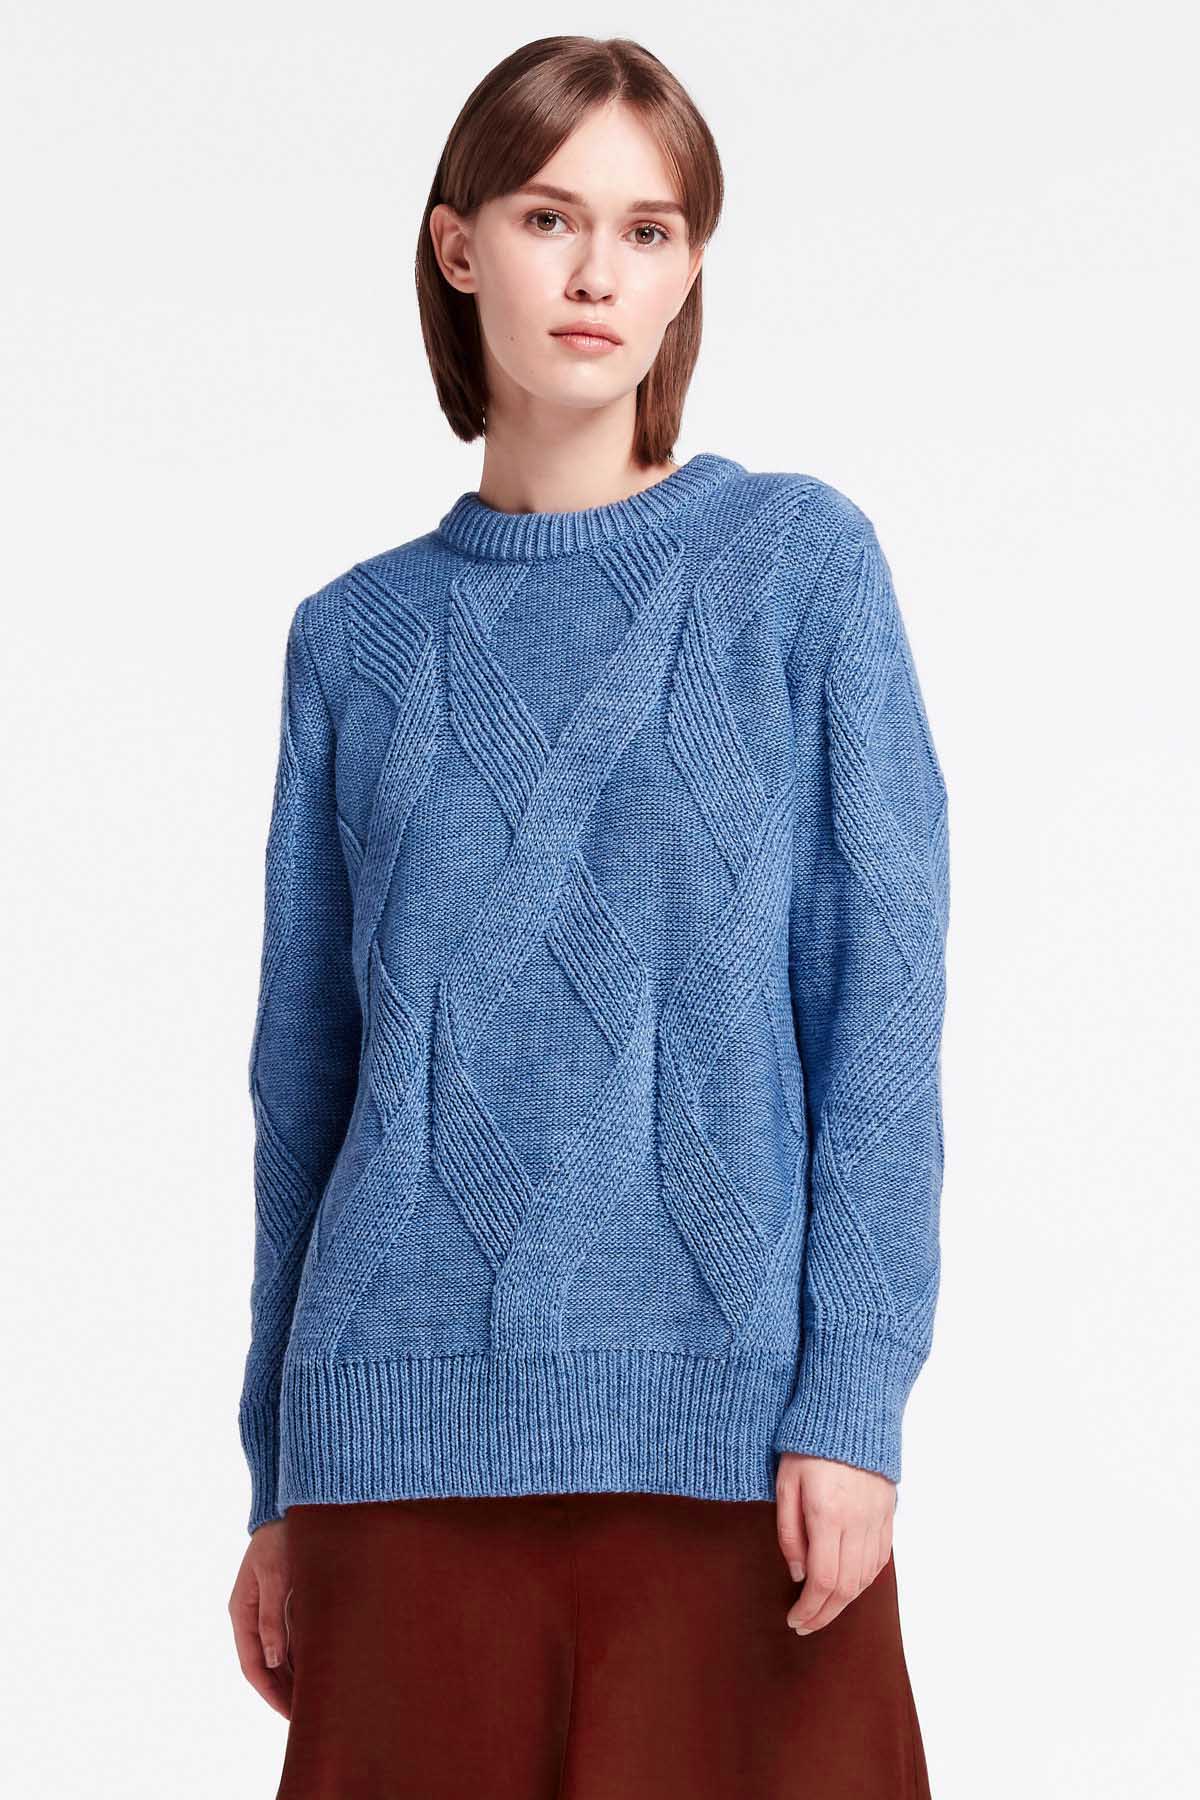 Blue free knit sweater, photo 1